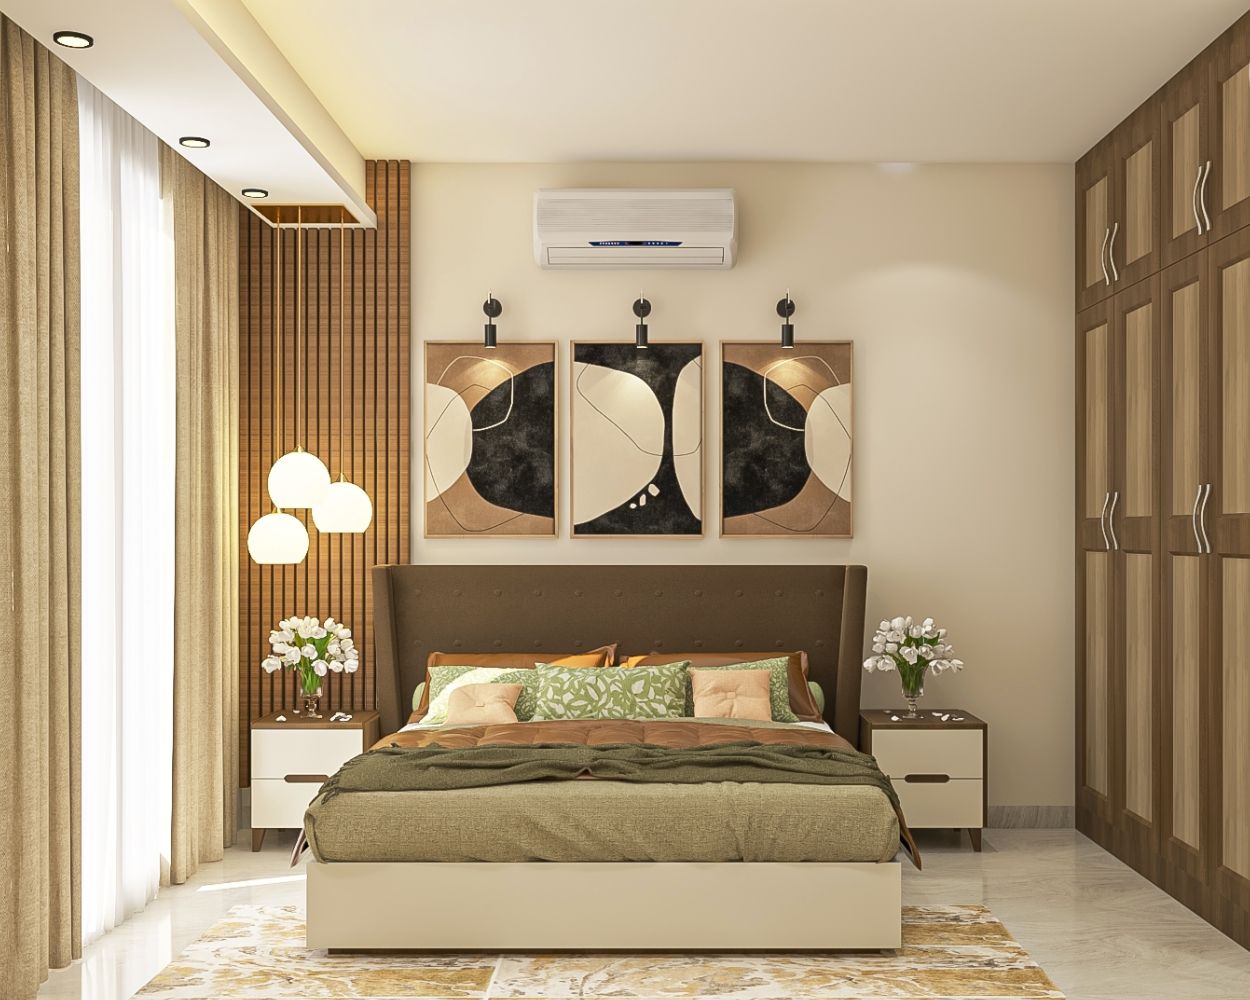 Mid-Century Modern Brown And Beige Master Bedroom Design With 4-Door Swing Wardrobe